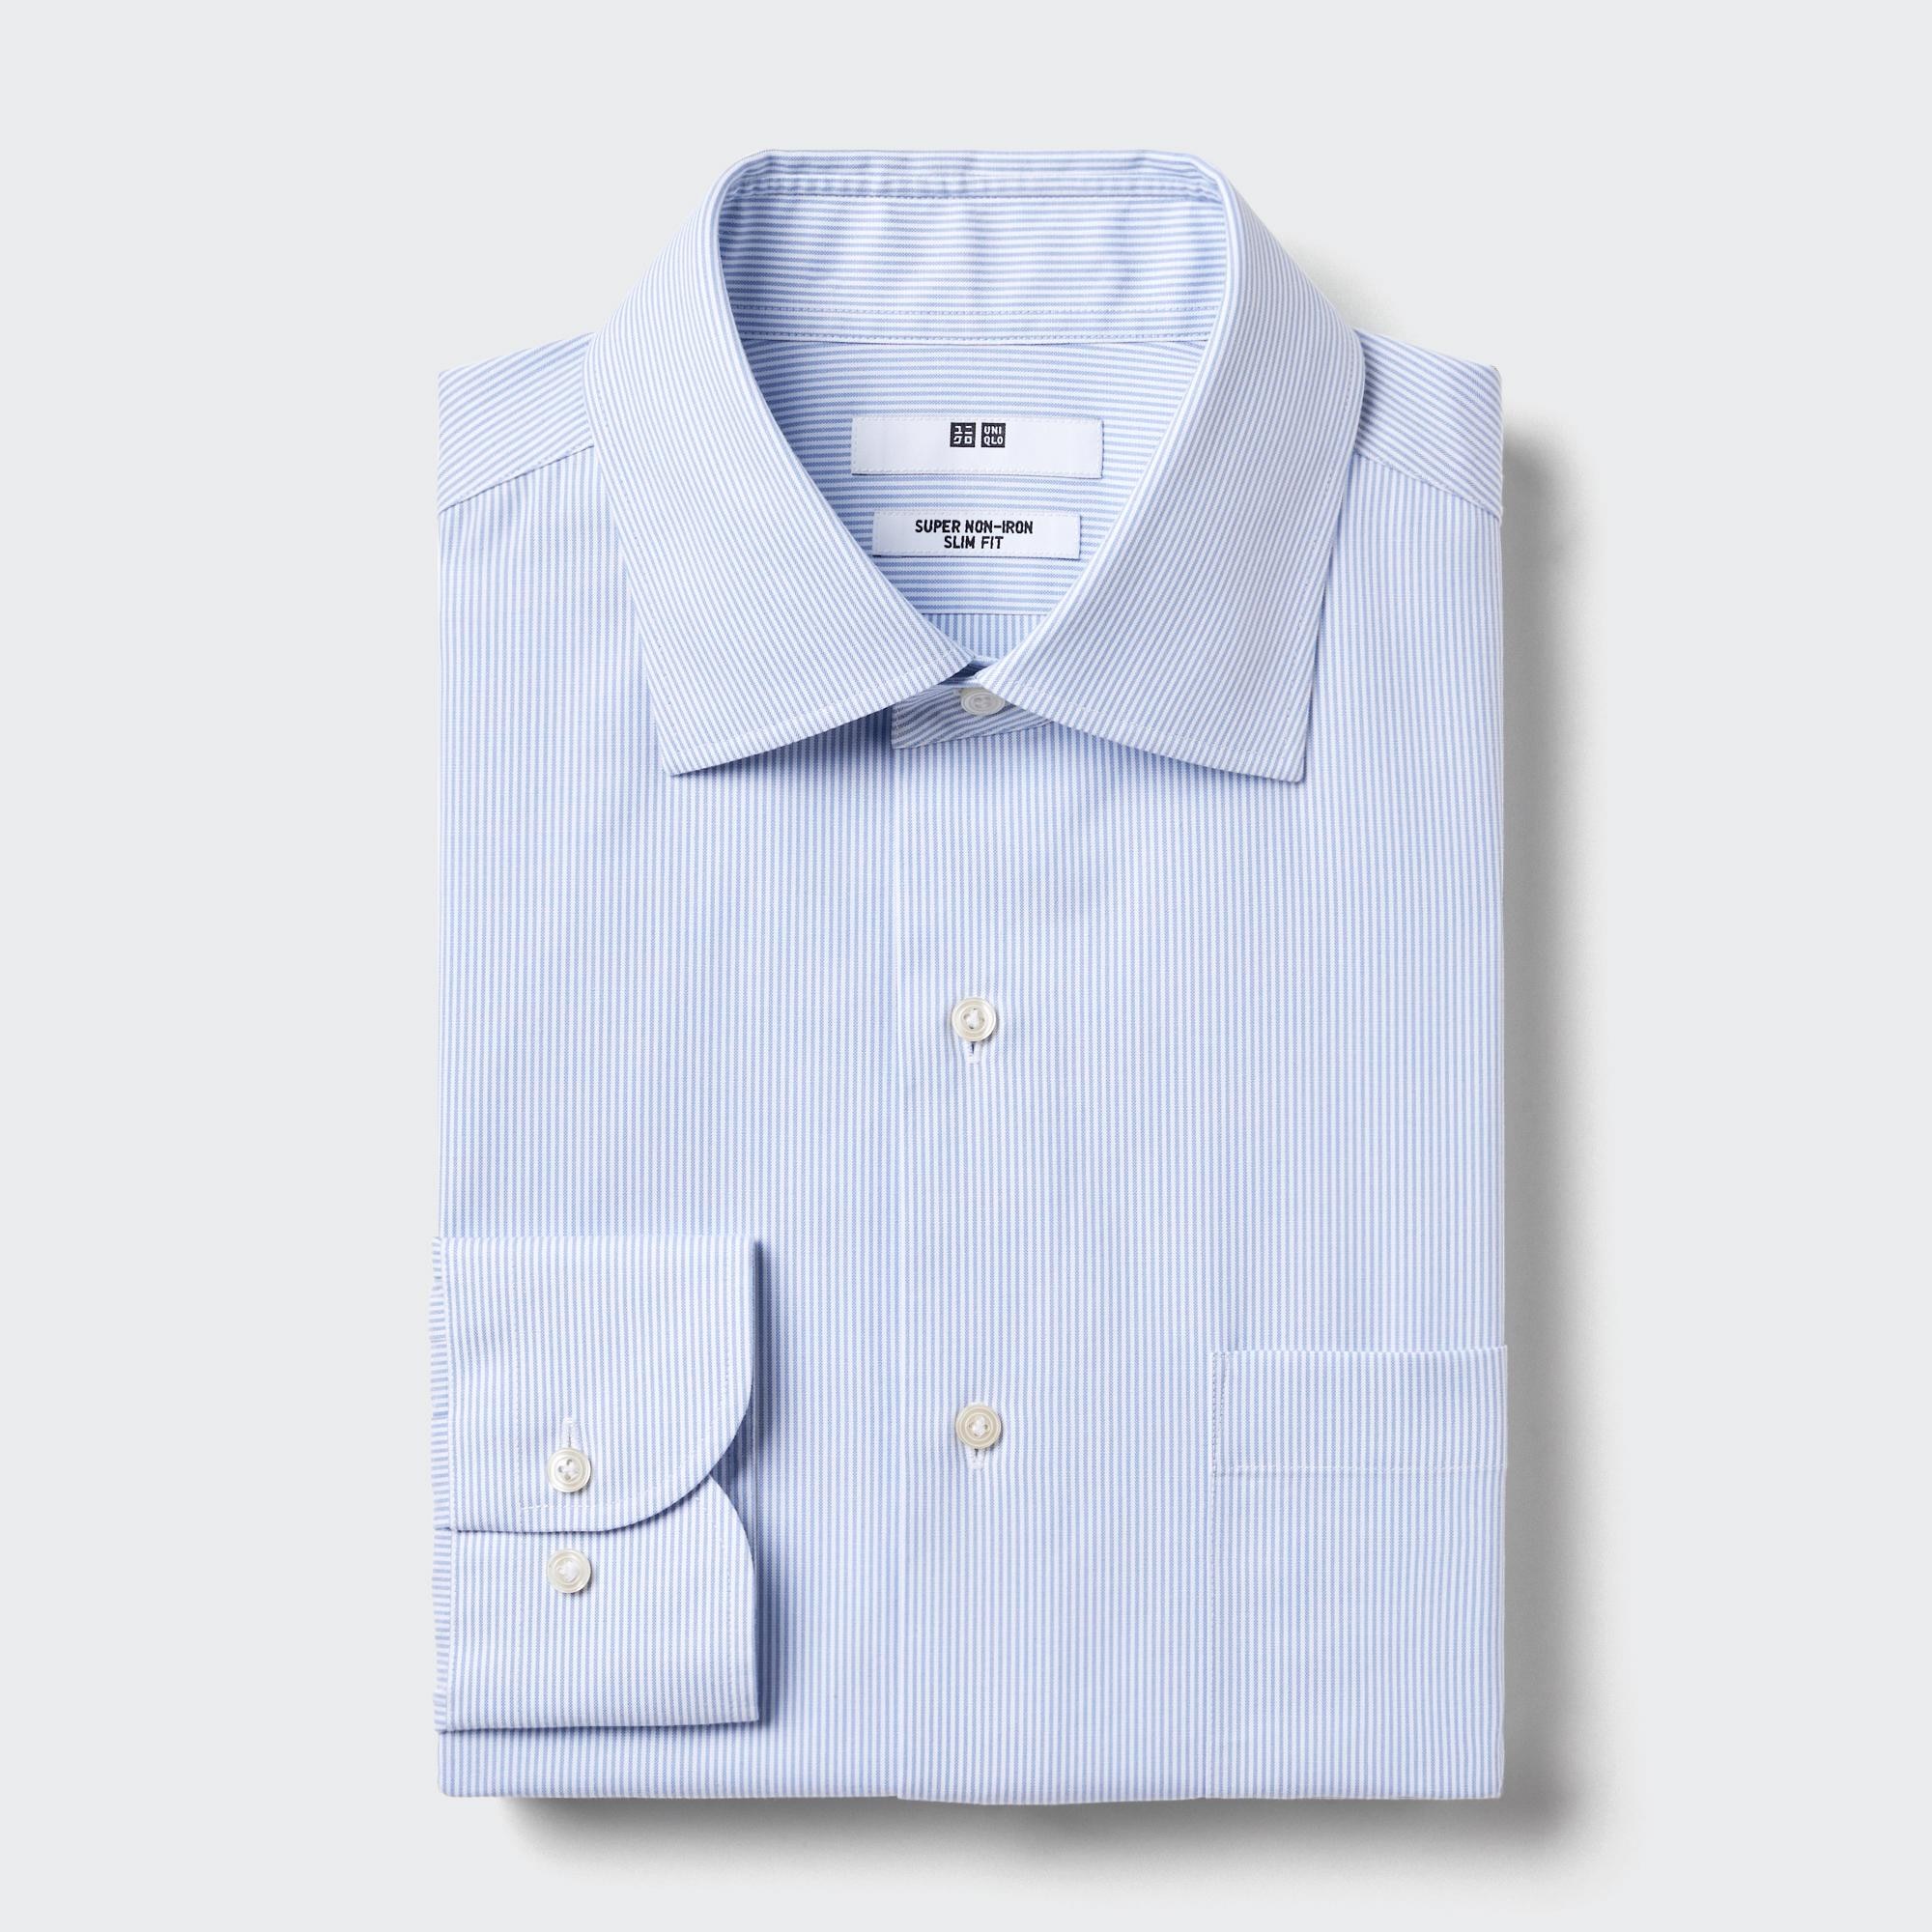 ワイシャツの関連商品 | ユニクロ